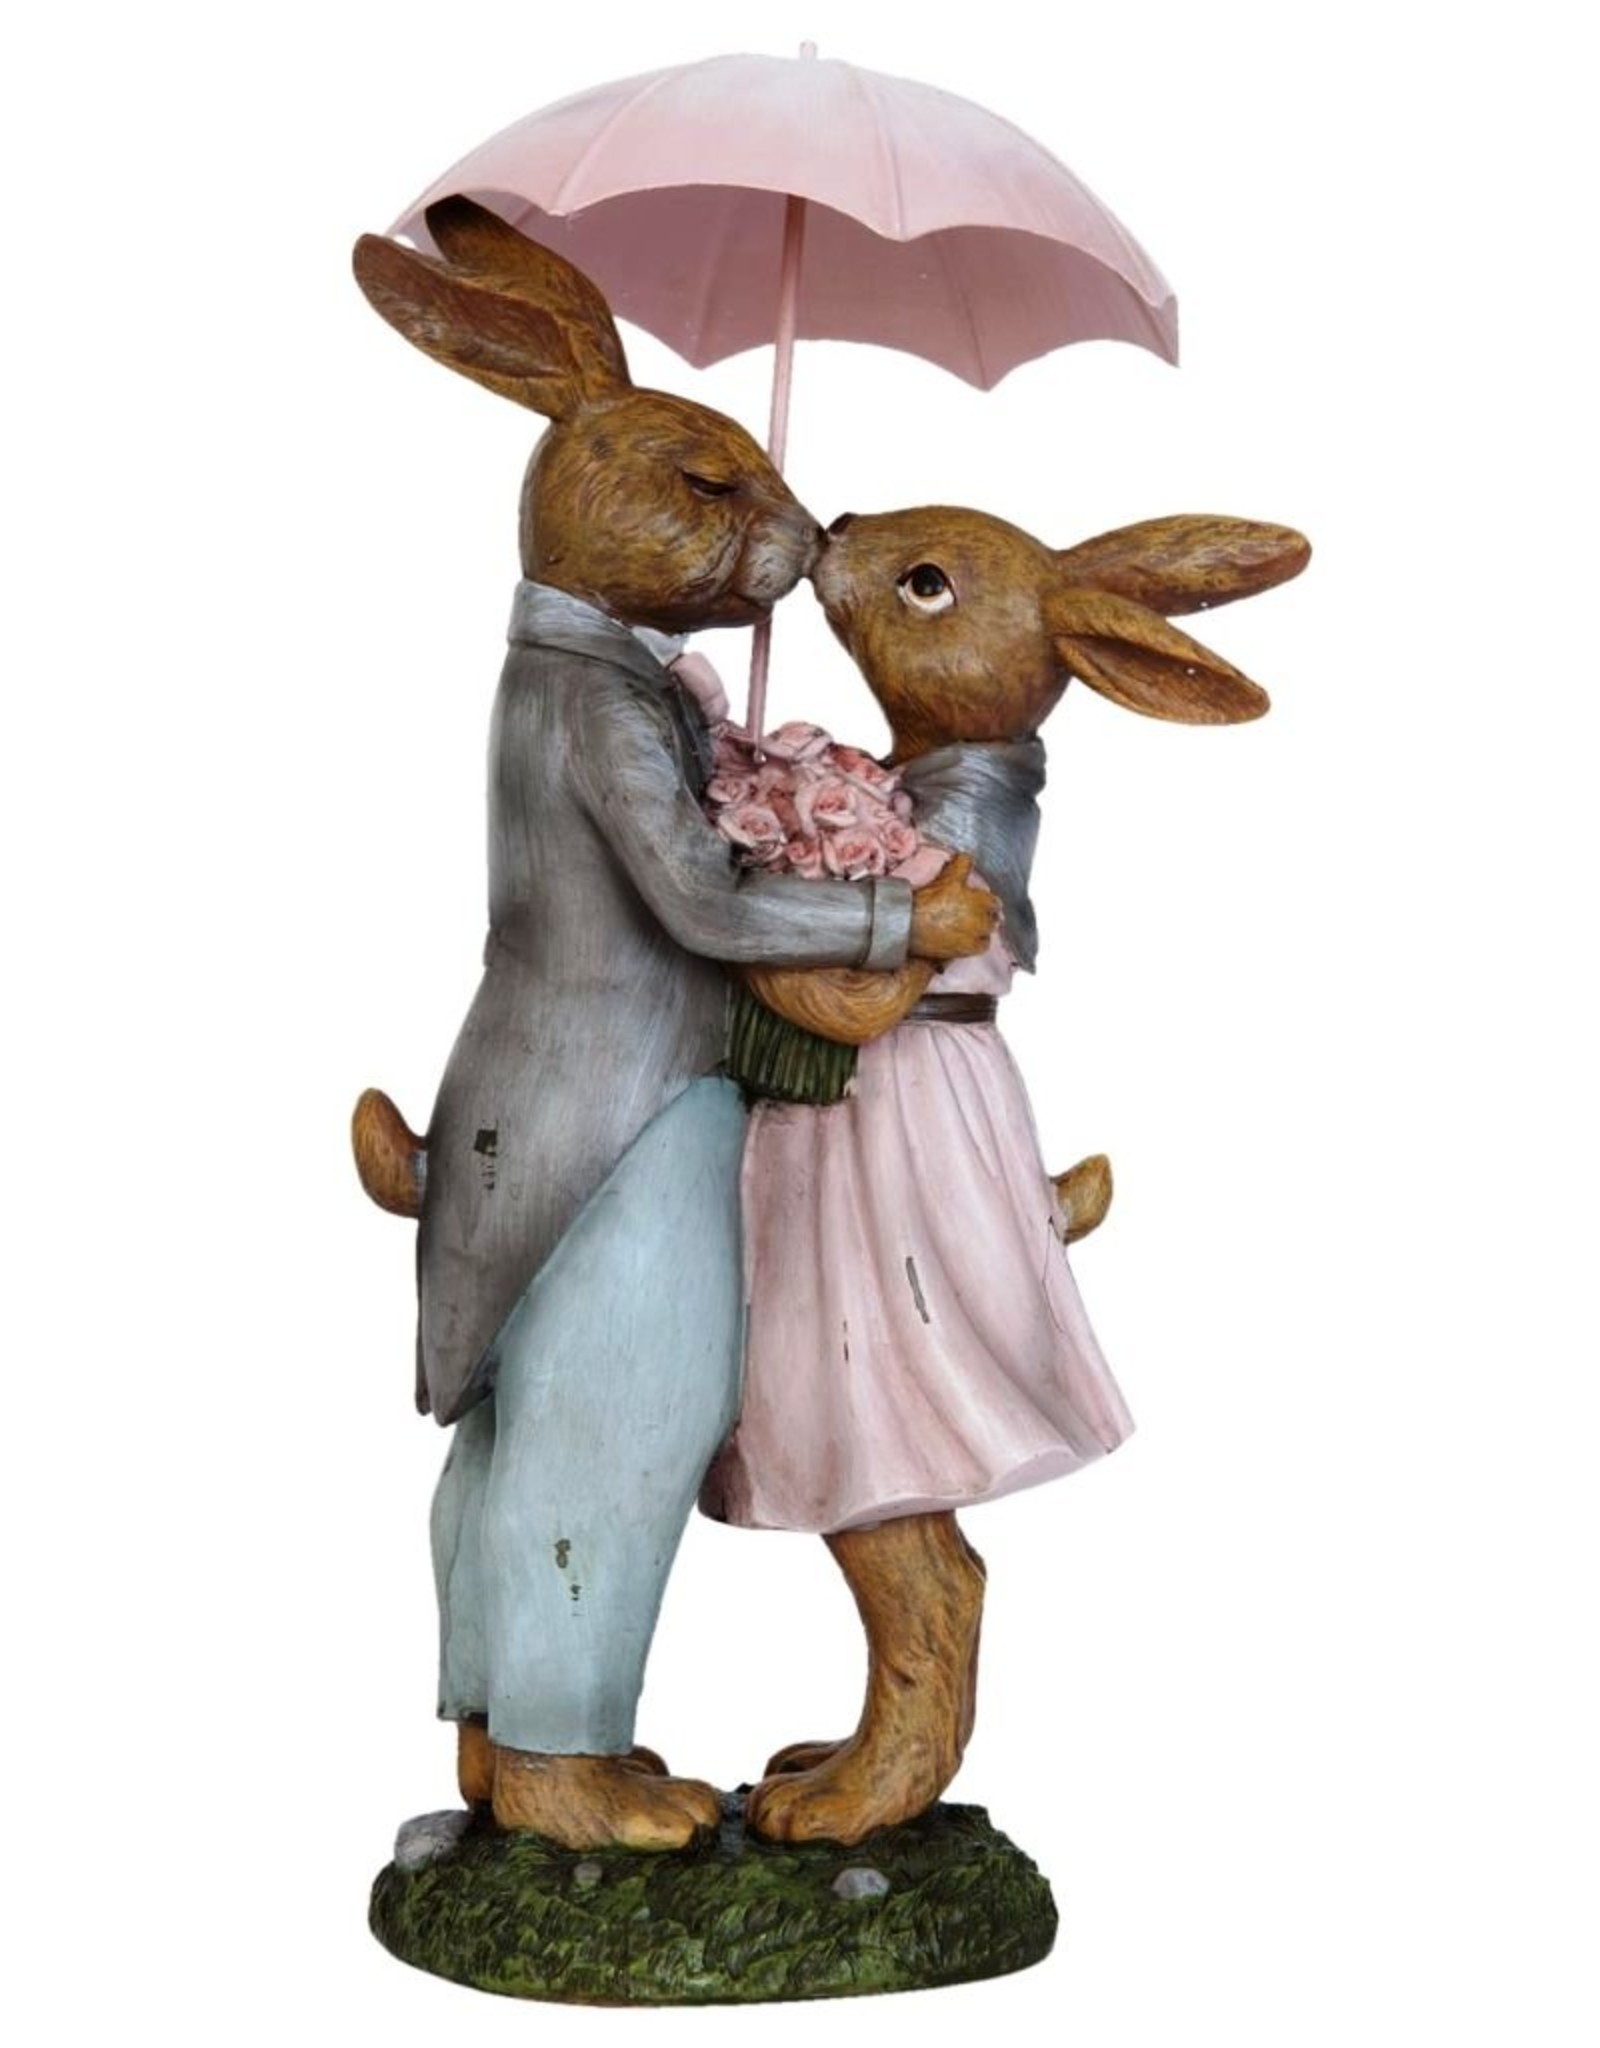 C&E Giftware & Lifestyle - Rabbits in love under umbrella statue 34cm